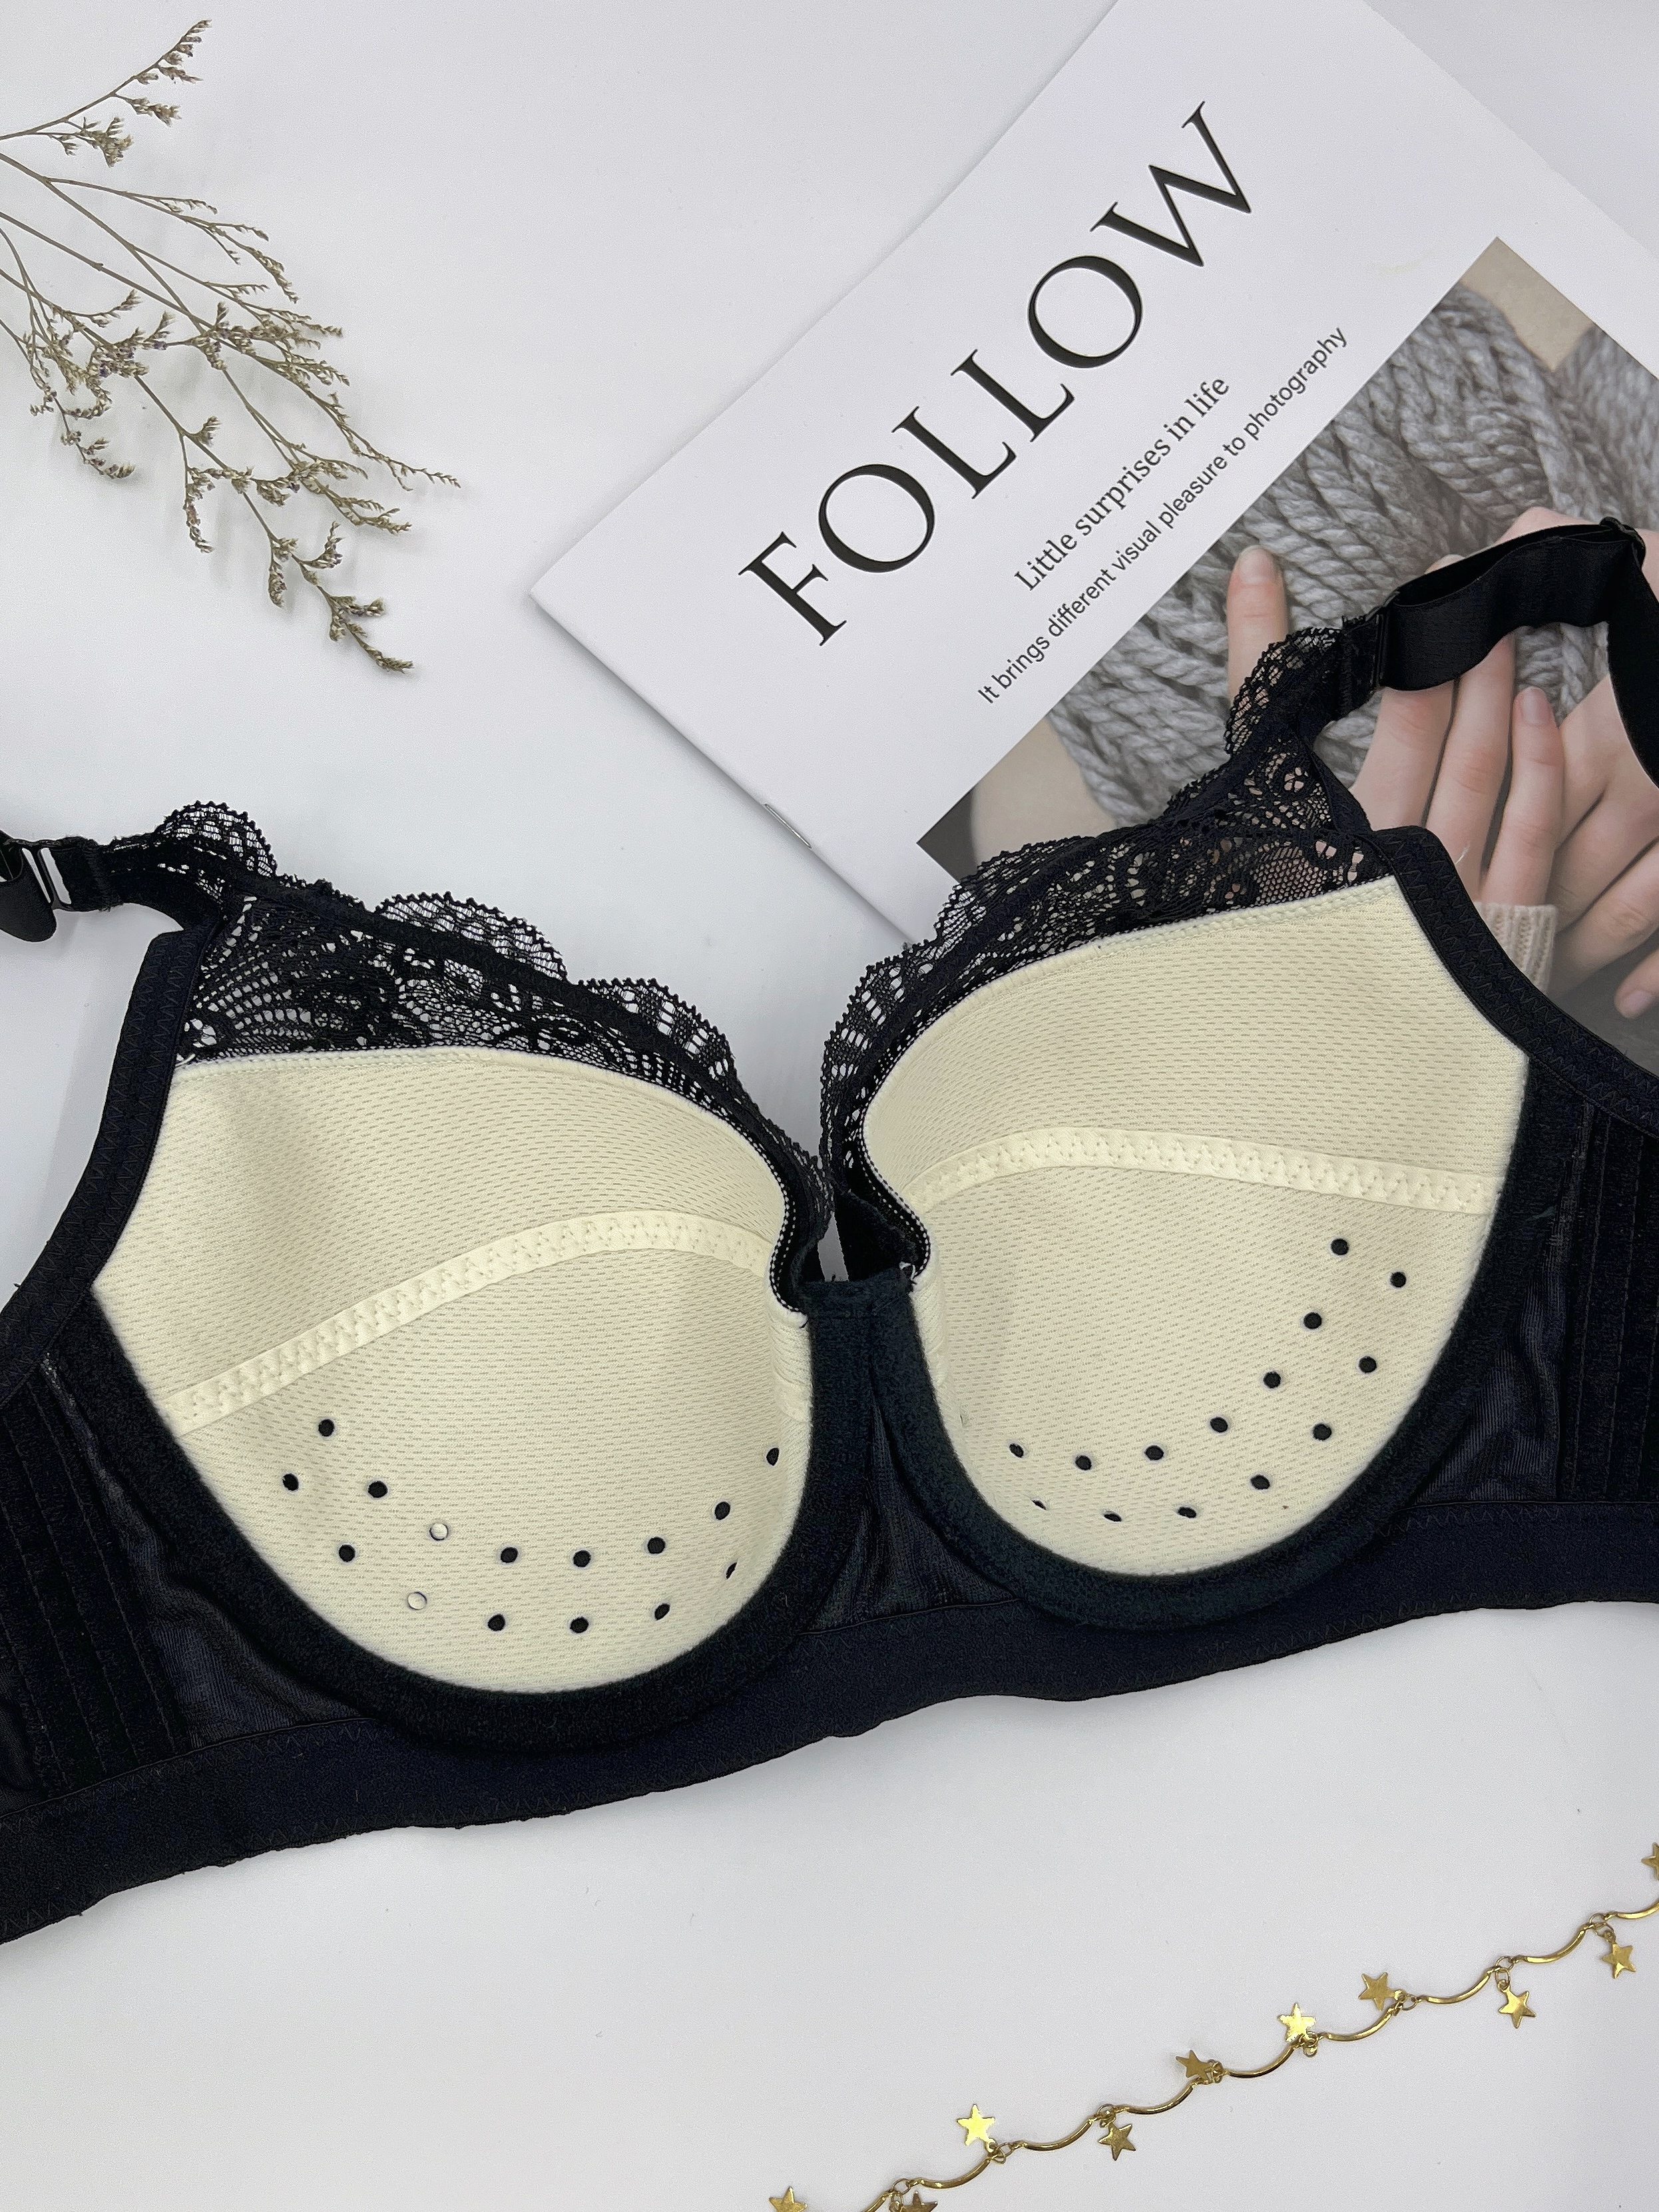 Buy online Fancy Bra from lingerie for Women by Littu Blouse for